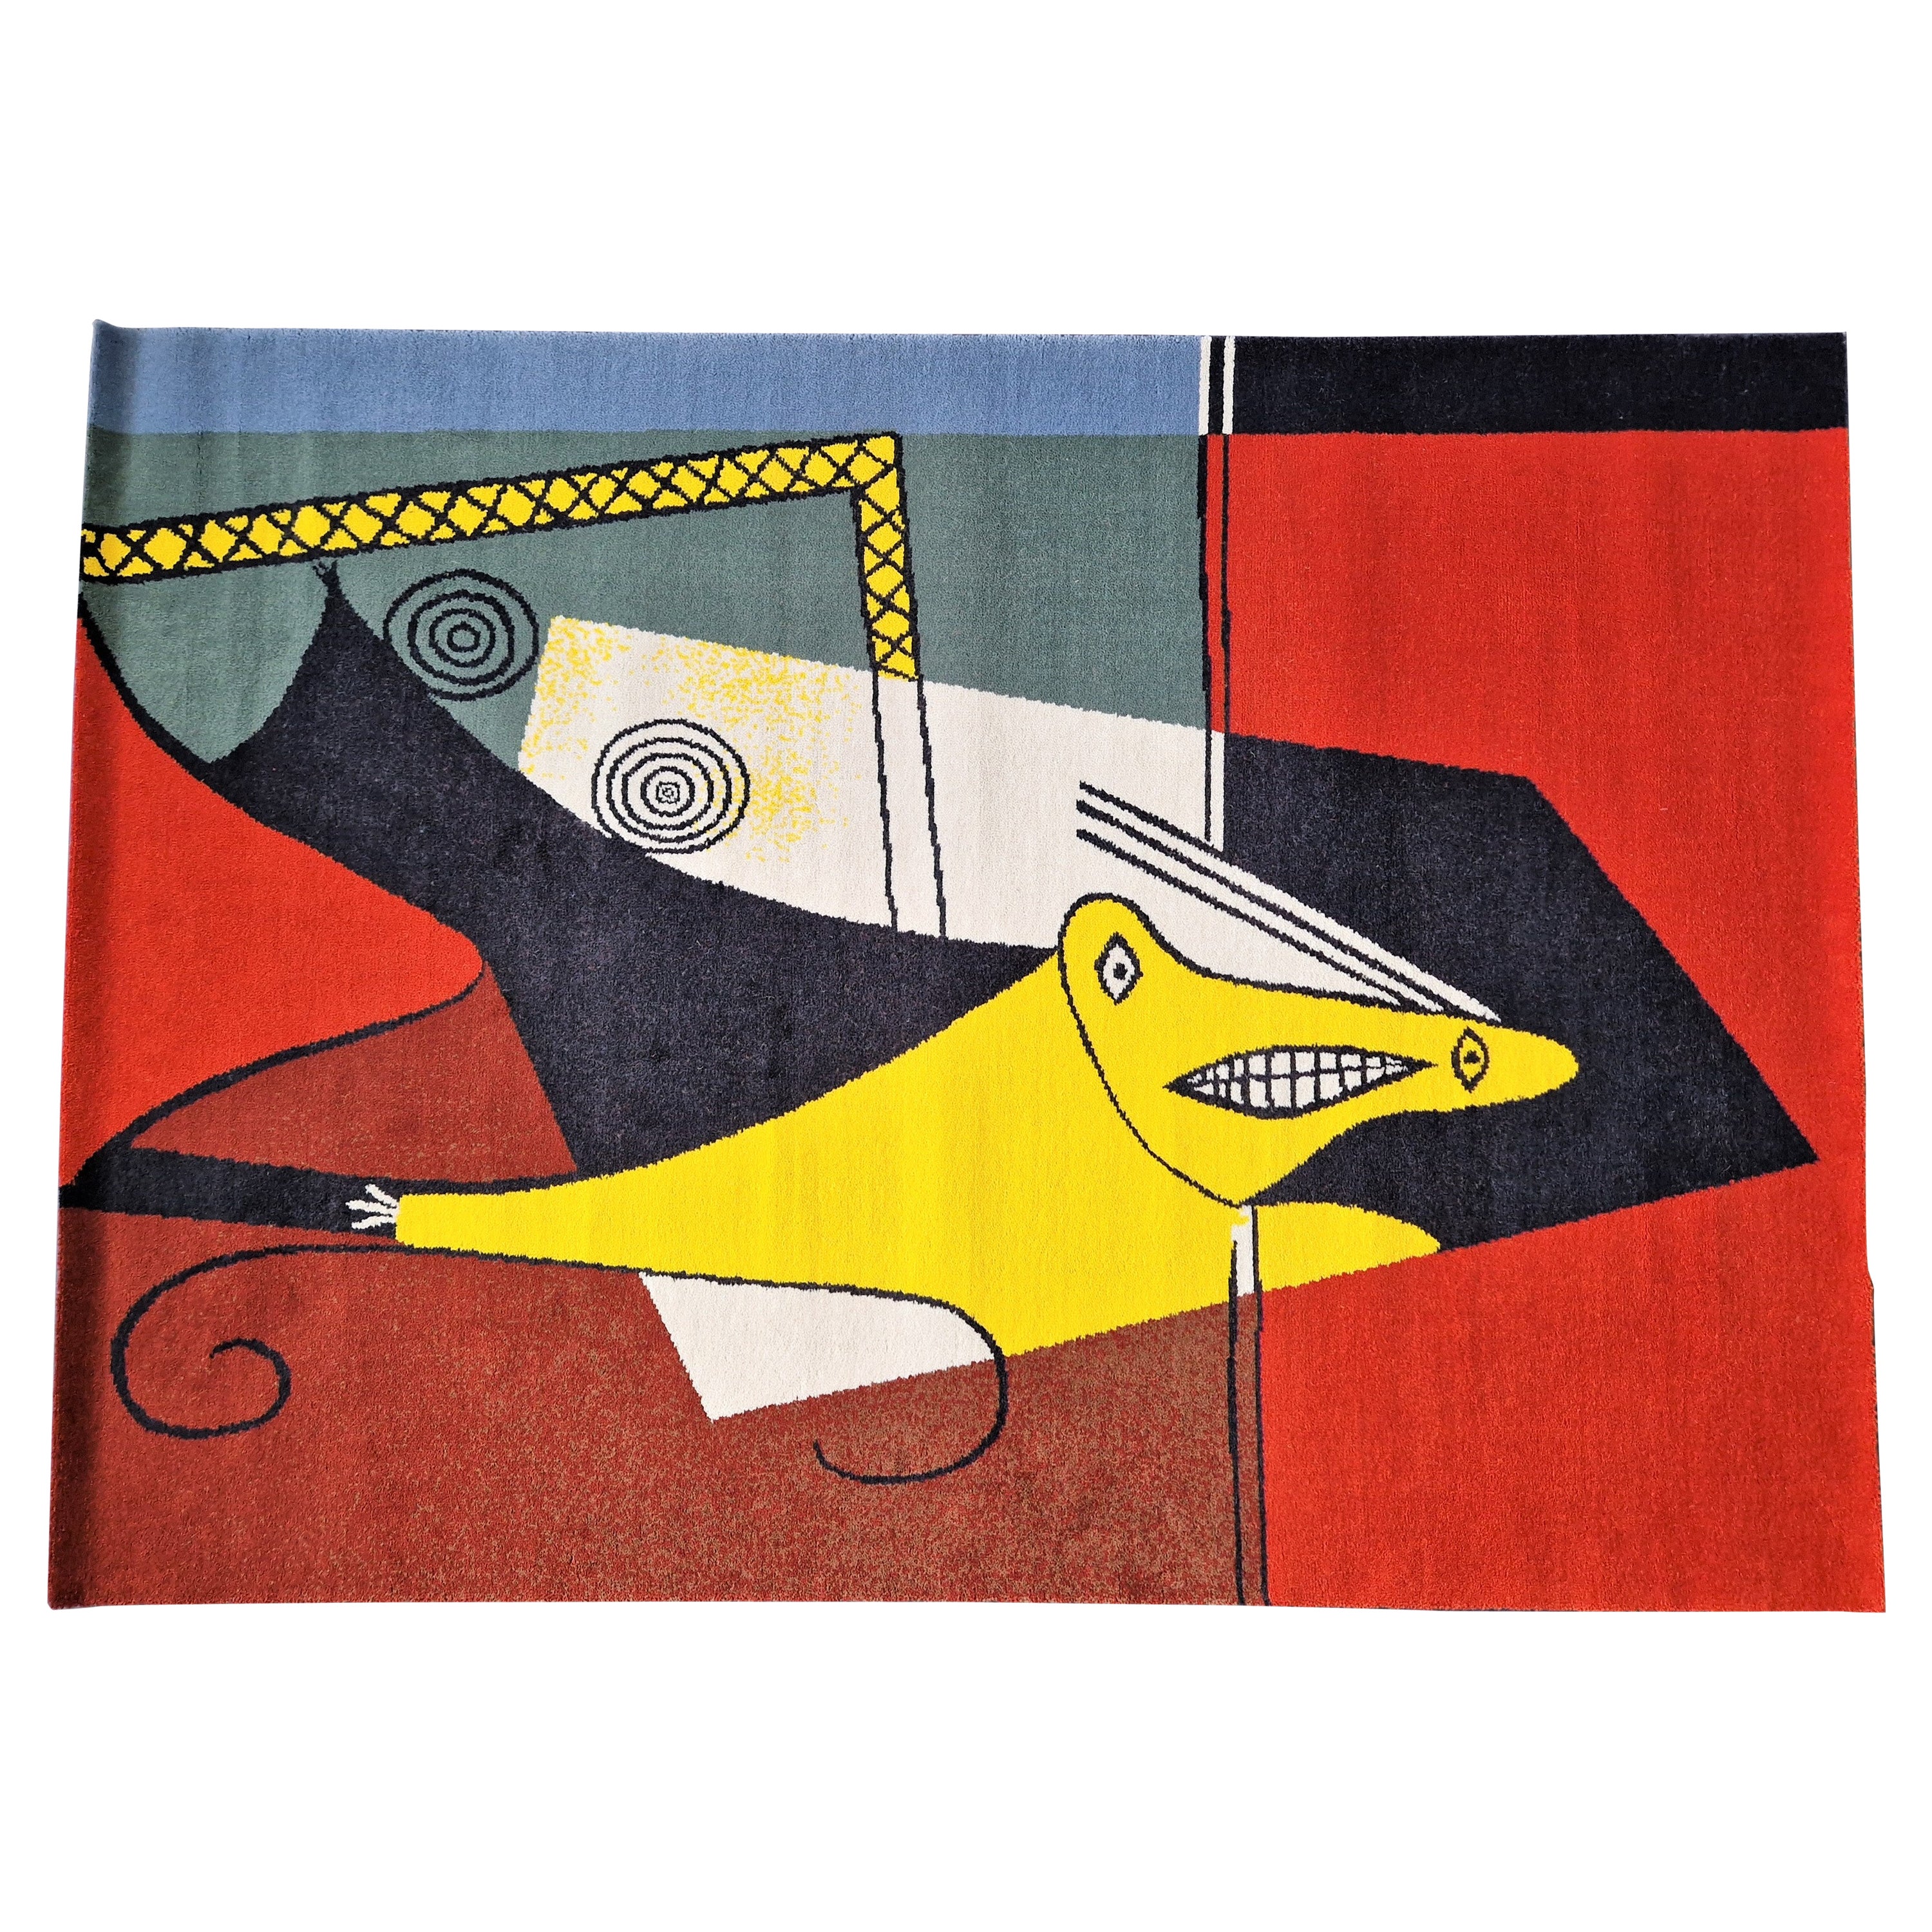 Großer neuseeländischer Wollteppich „La Figura“ nach dem Kunstwerk von Picasso, hergestellt von Desso